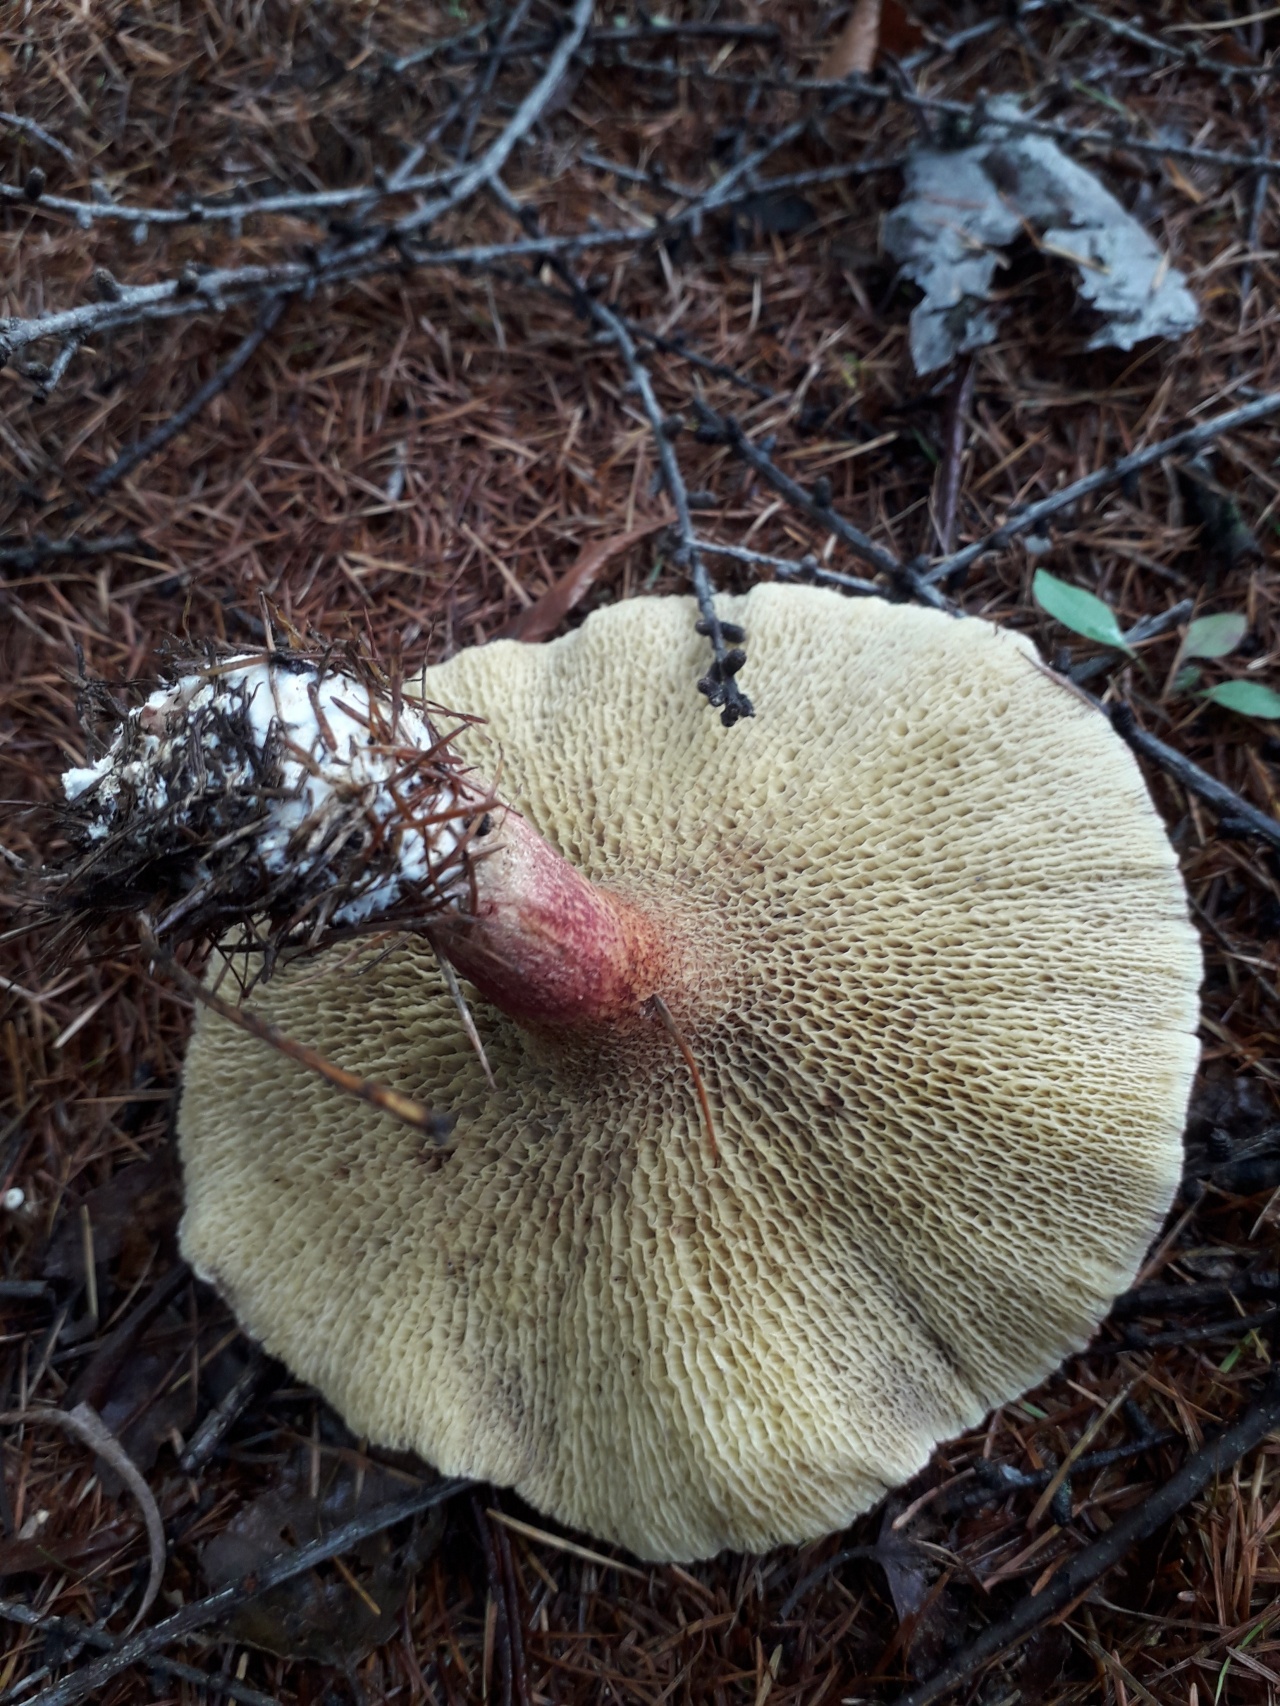 Список лесных съедобных грибов с фото, названиями и описанием. болетин болотный болотники грибы